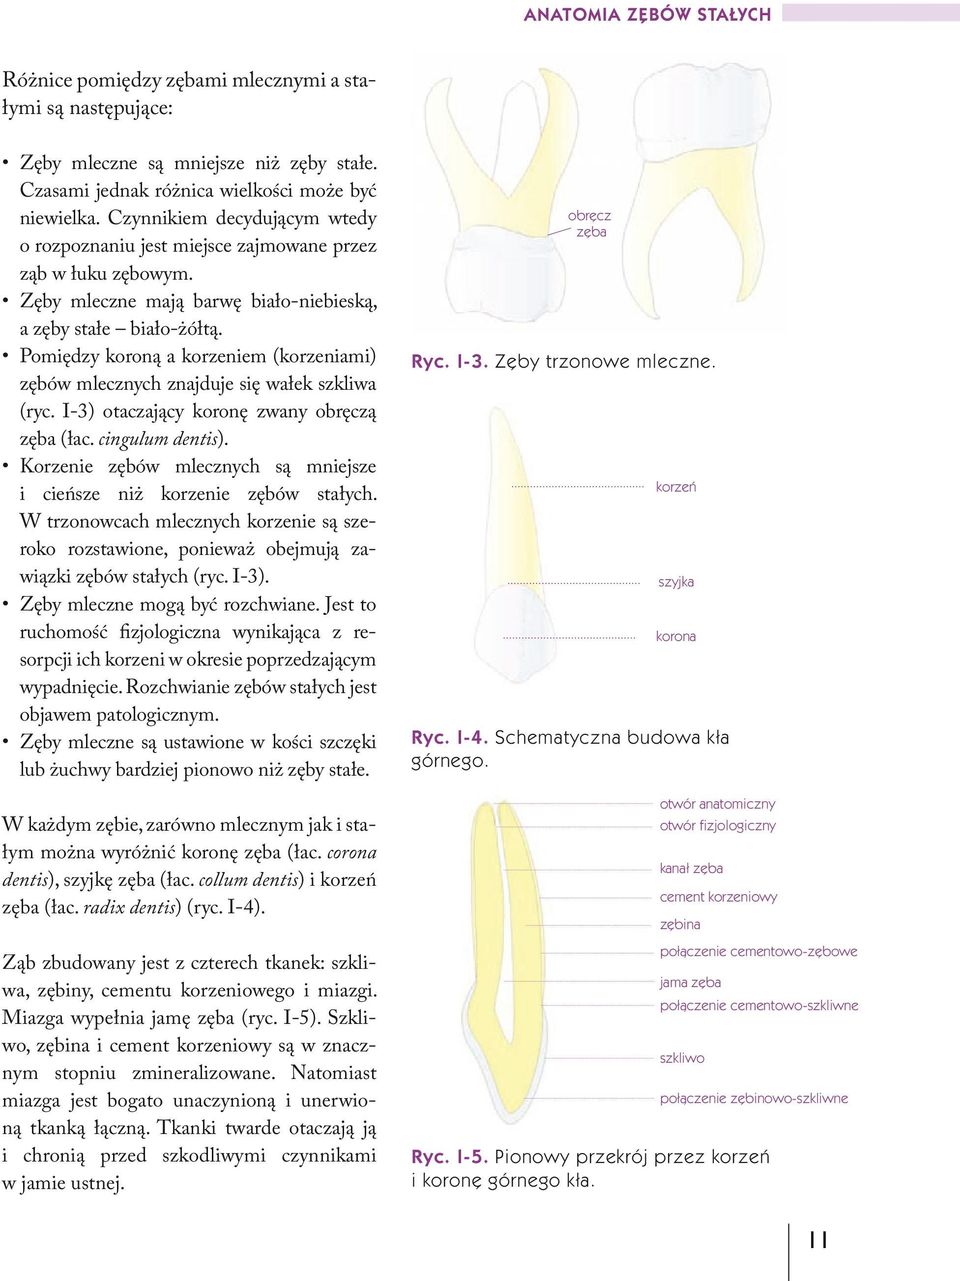 Pomiędzy koroną a korzeniem (korzeniami) zębów mlecznych znajduje się wałek szkliwa (ryc. I-3) otaczający koronę zwany obręczą zęba (łac. cingulum dentis).